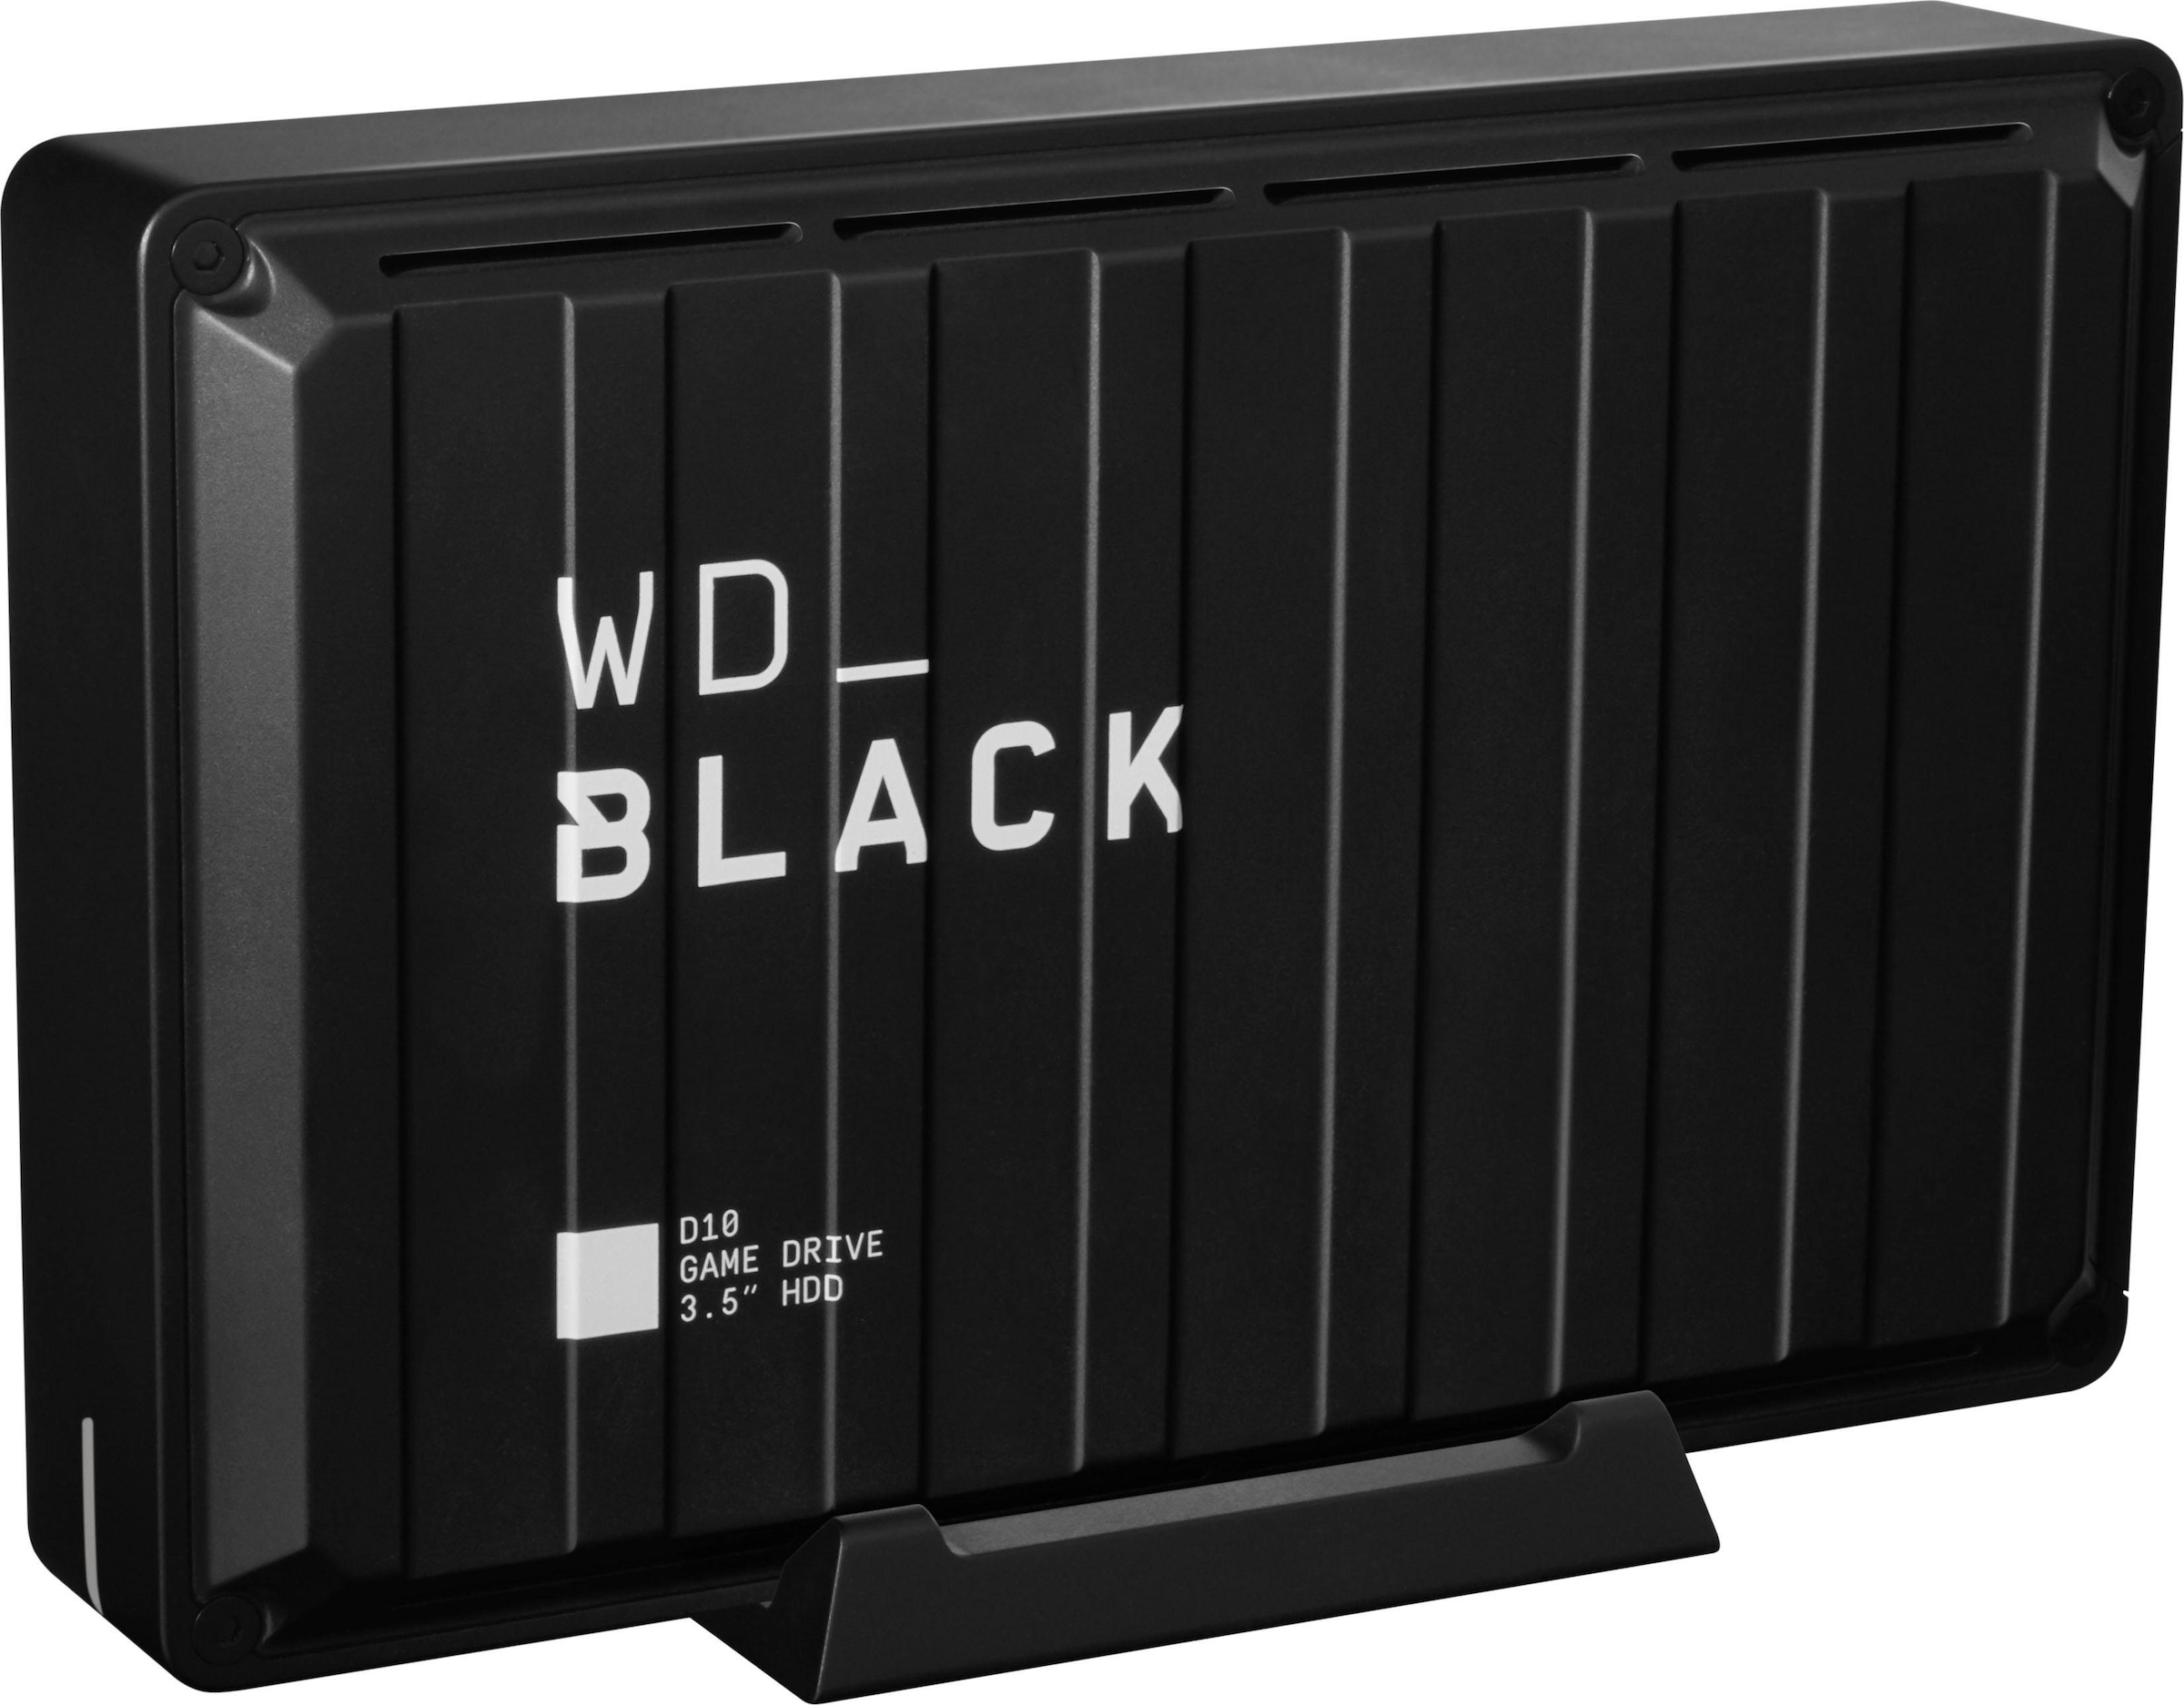 WD_Black Externe Gaming-Festplatte »D10 Game Dr...